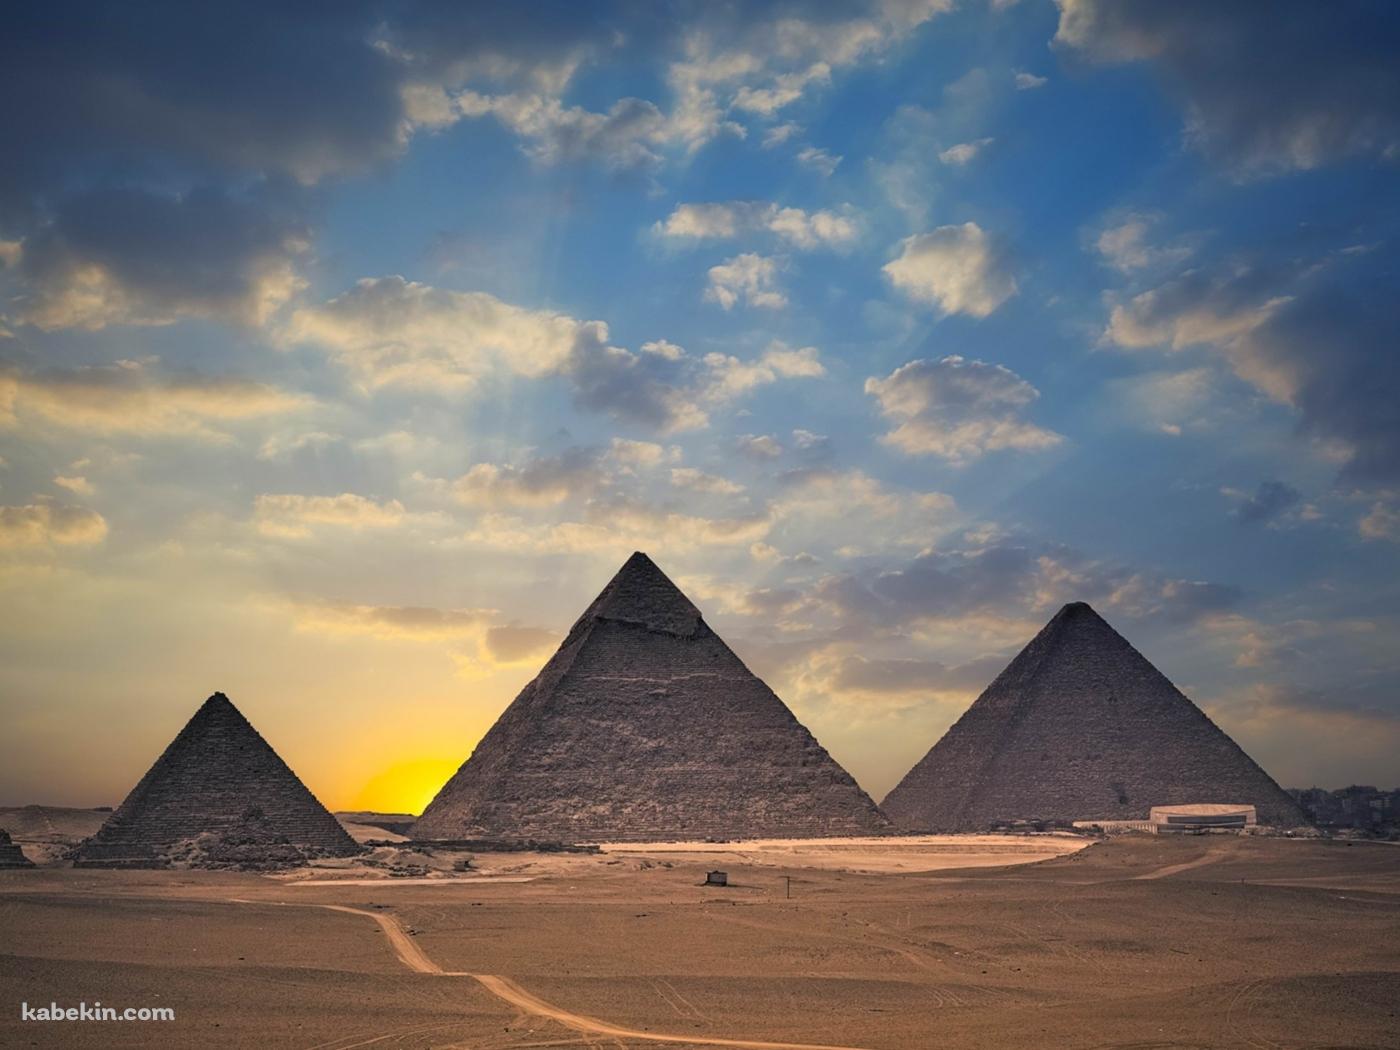 エジプトの並んだピラミッドの壁紙(1400px x 1050px) 高画質 PC・デスクトップ用